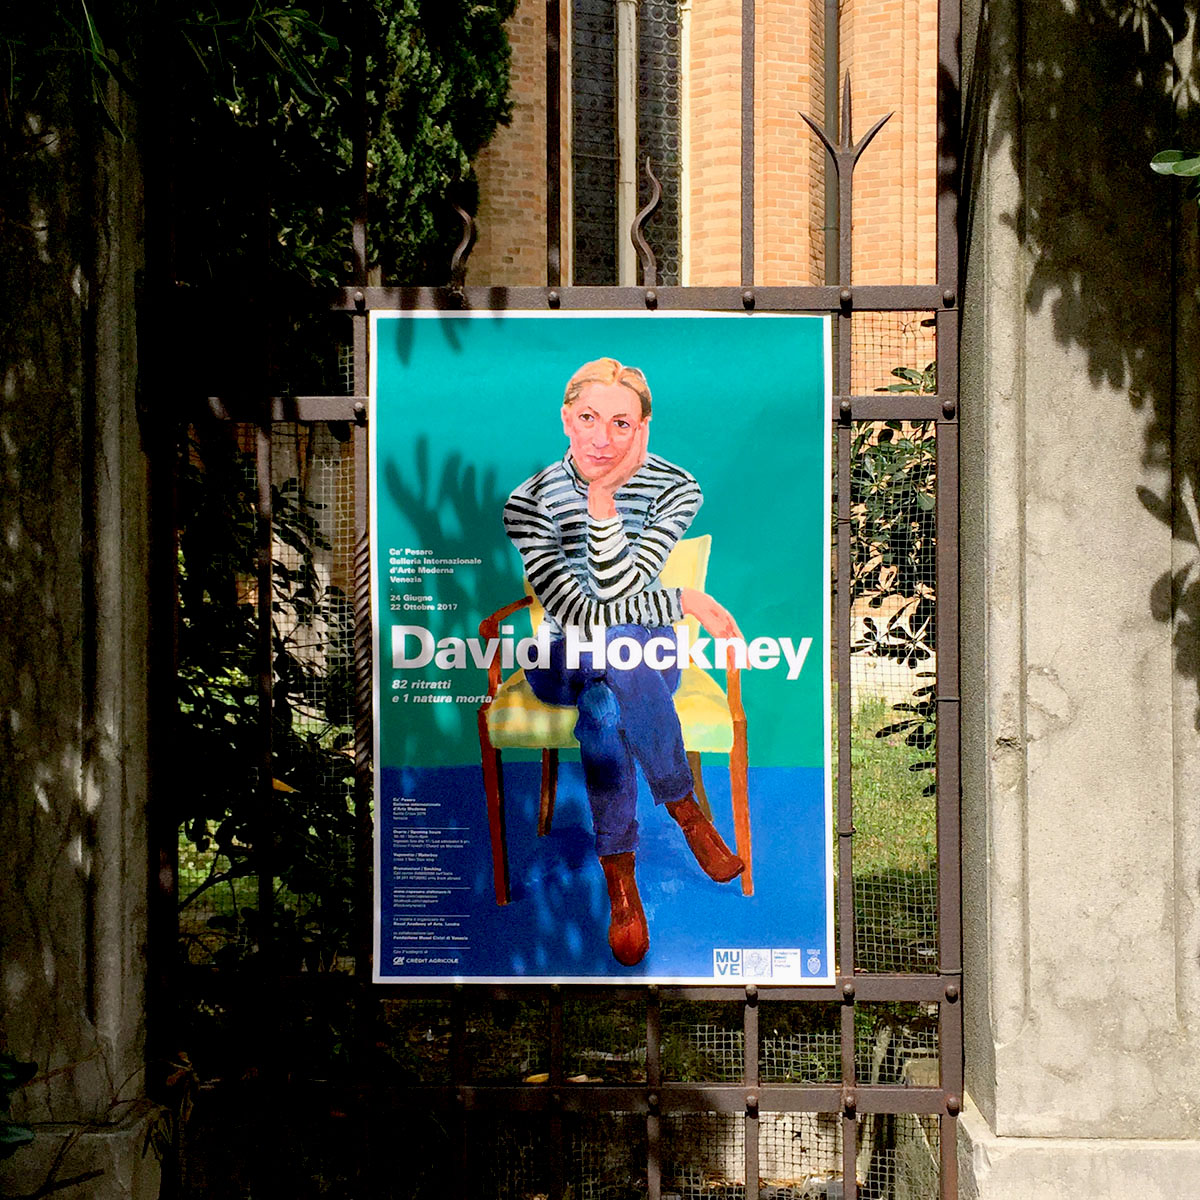 David-Hockney82-Portraits-and-1-Still-life-002 